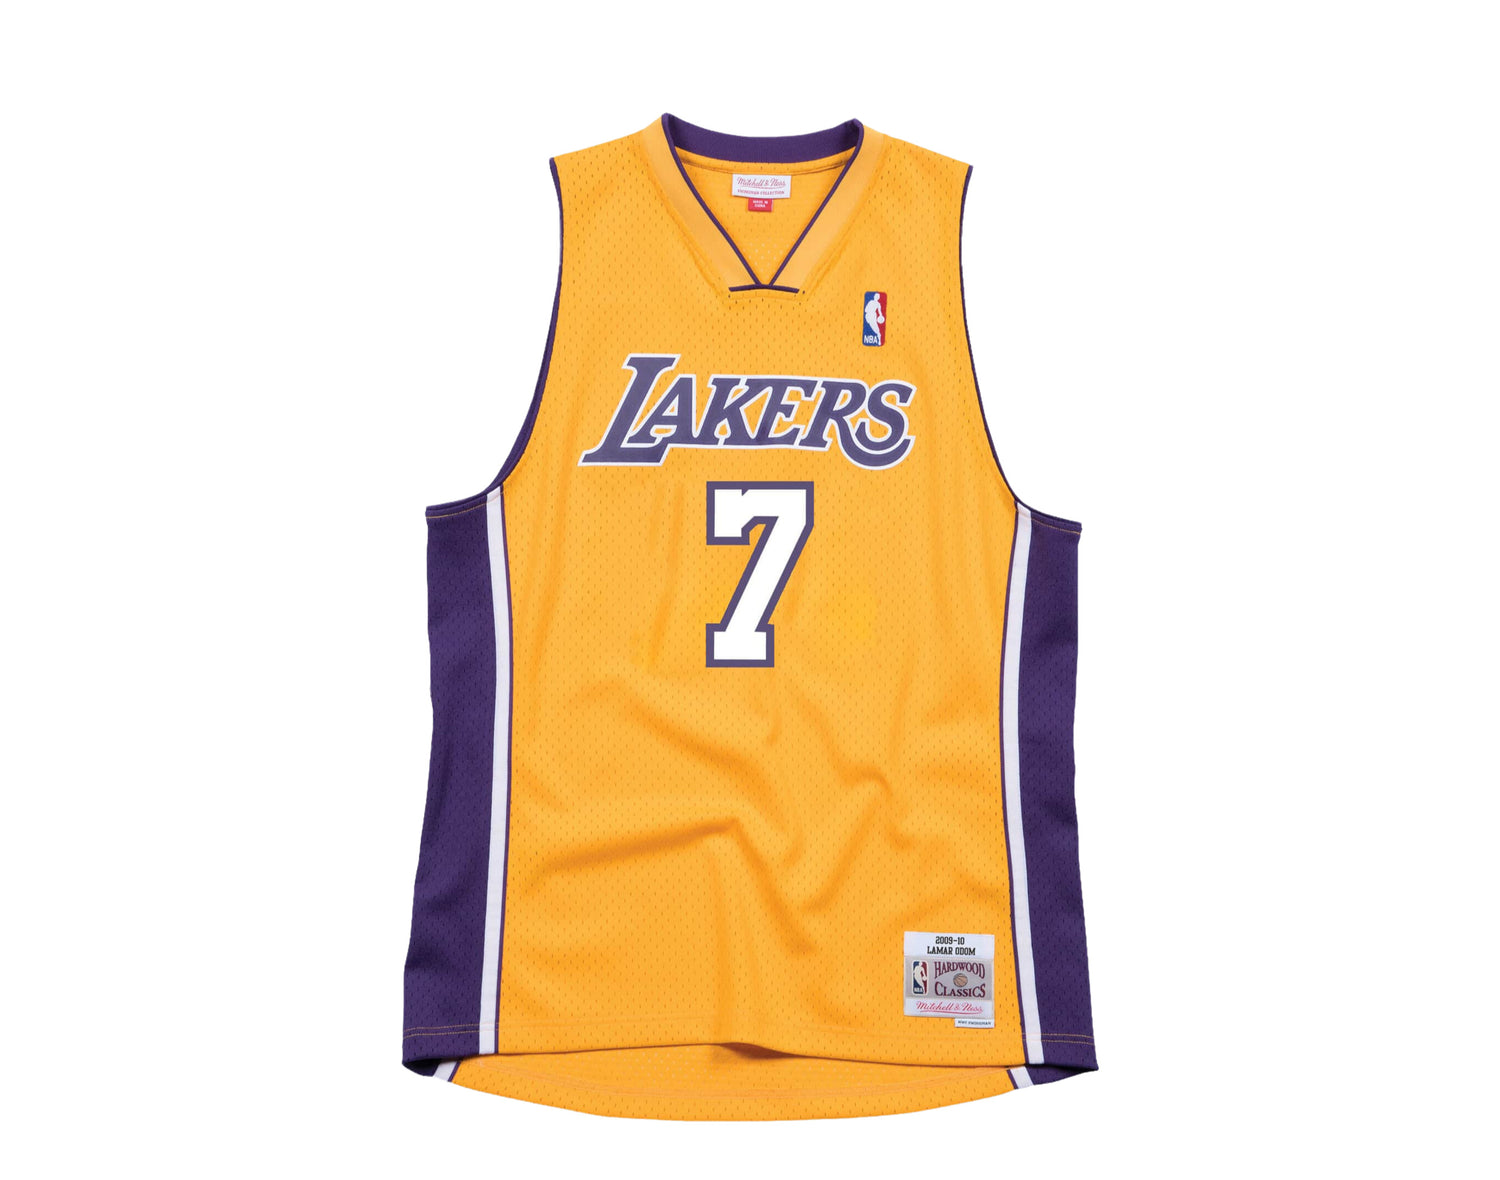 Mitchell & Ness NBA Swingman Los Angeles Lakers 2009-10 Lamar Odom Men's Jersey